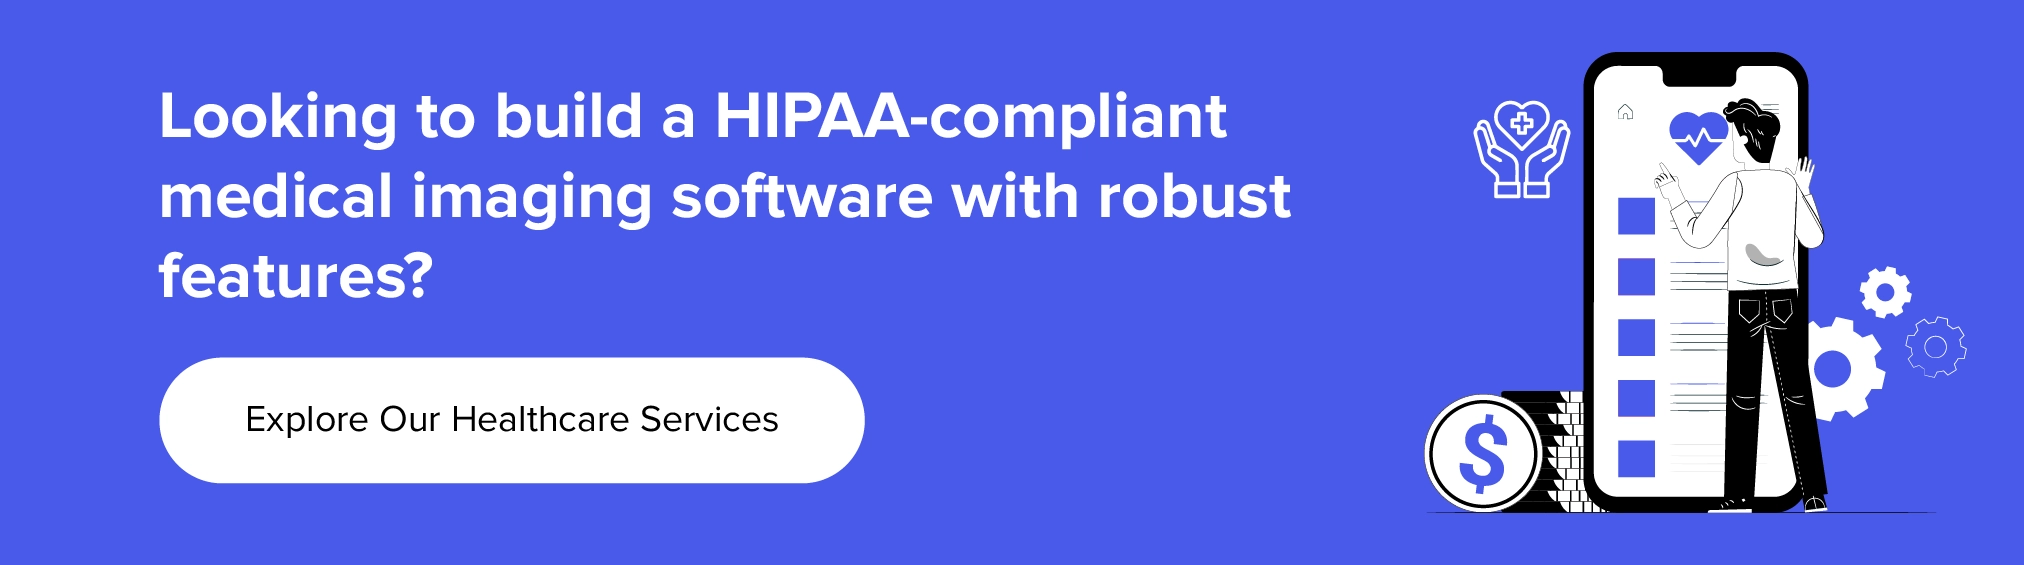 与我们合作构建符合 HIPAA 要求的医学成像软件